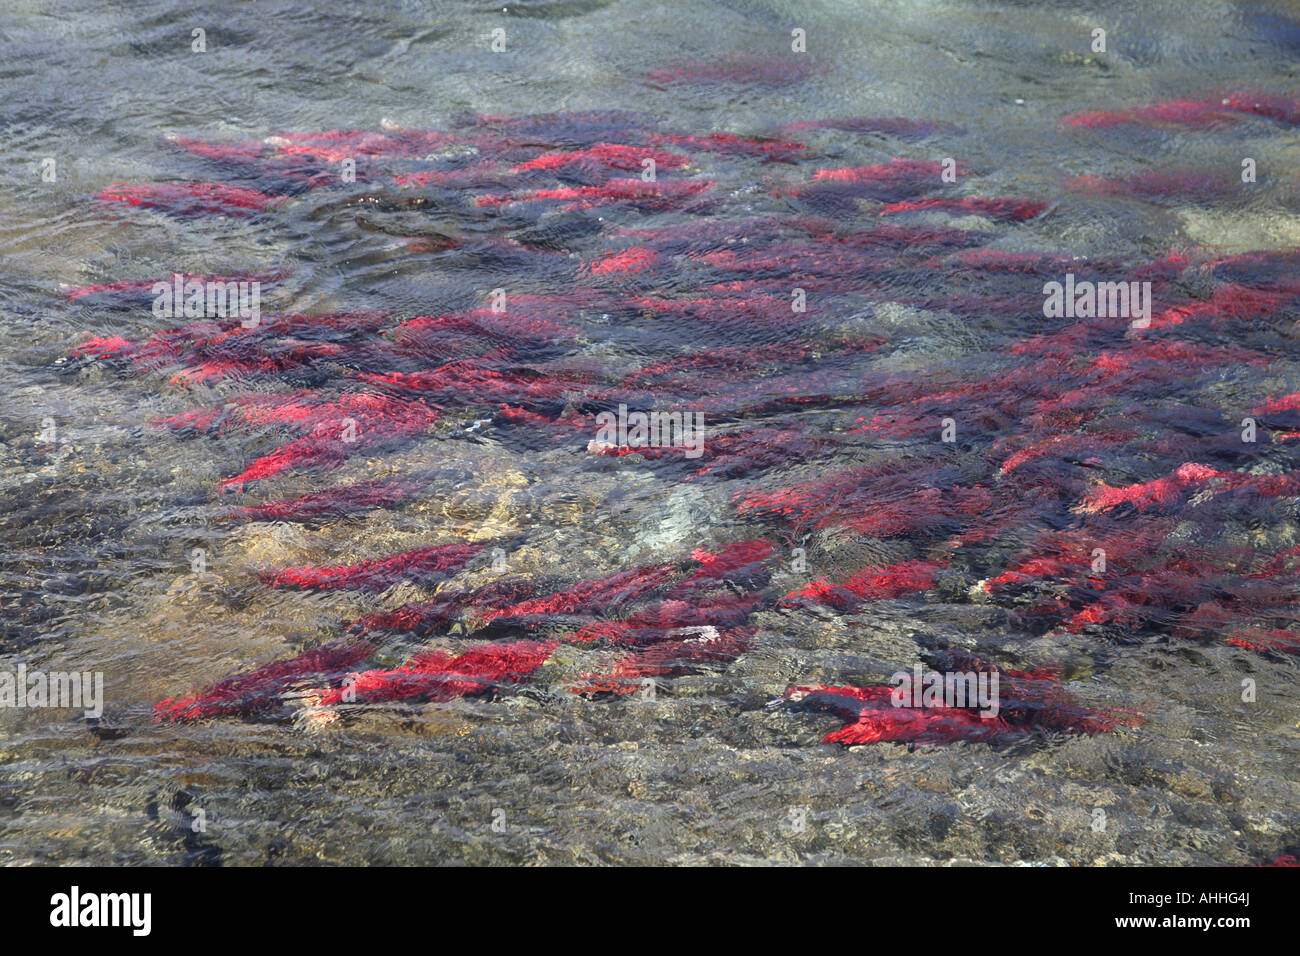 Le saumon rouge, le saumon rouge, le saumon rouge, bleu (Oncorhynchus nerka), l'école sous l'eau, USA, Alaska Banque D'Images